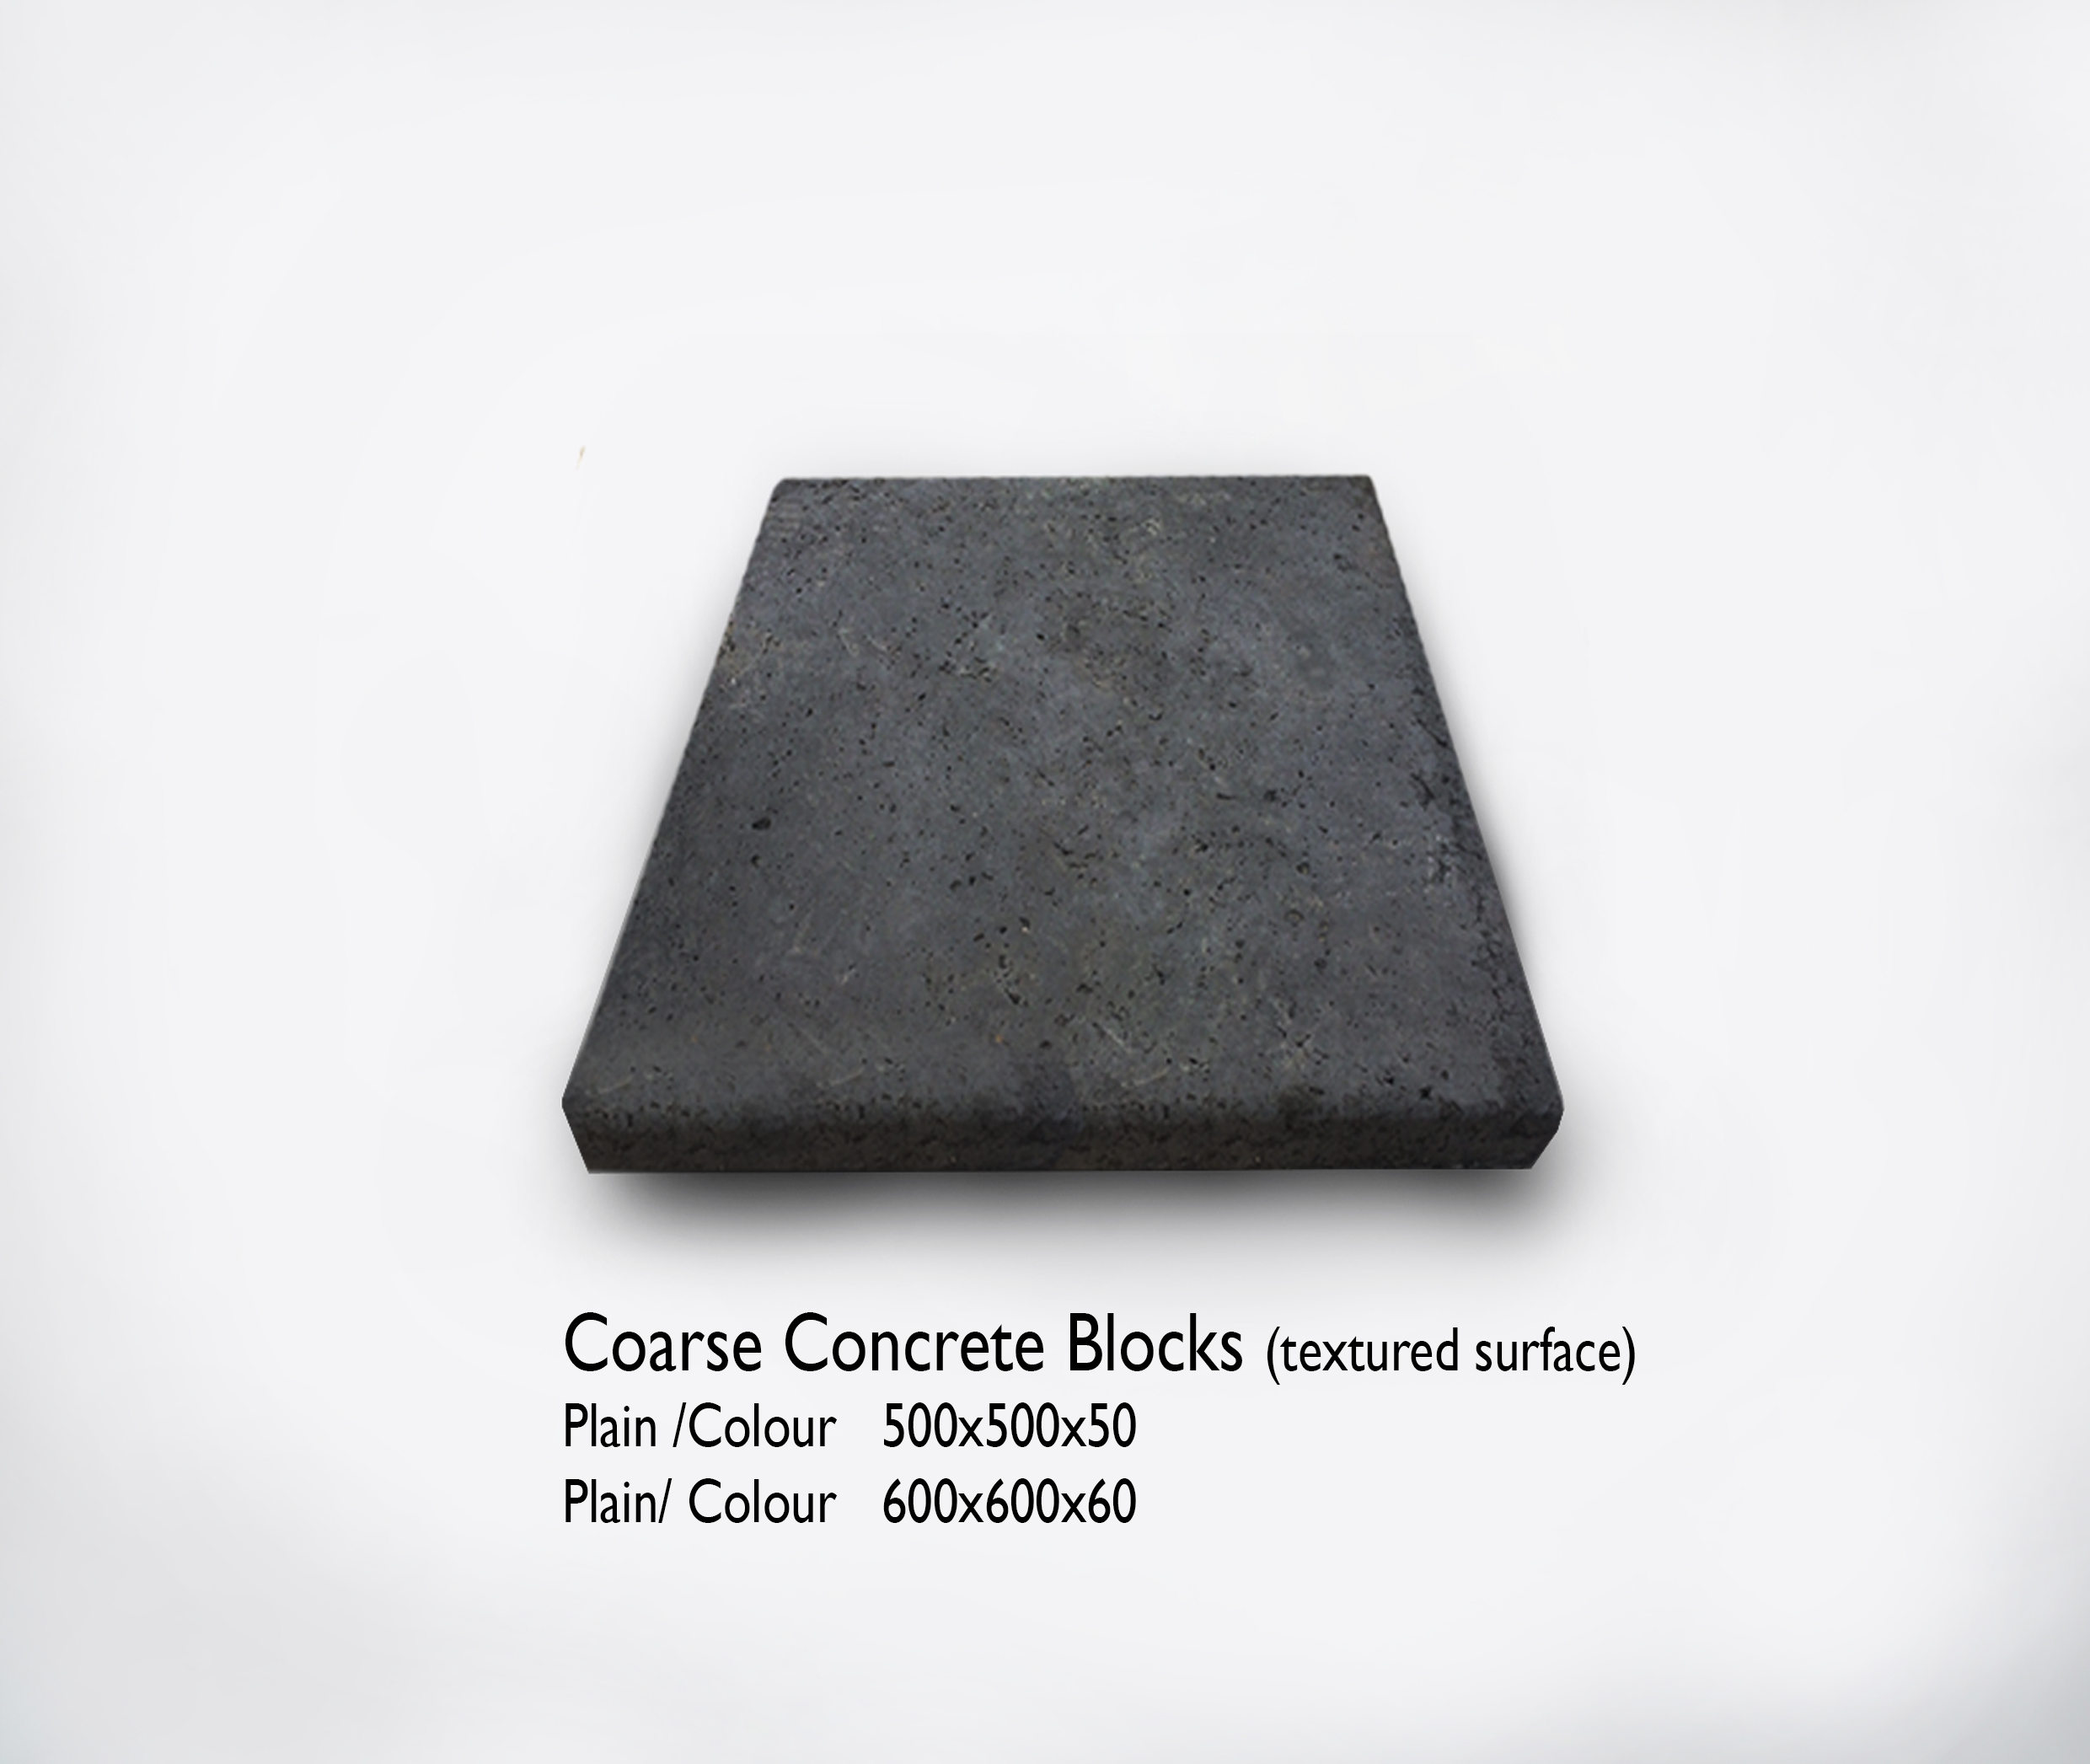 Coarse Concrete Blocks